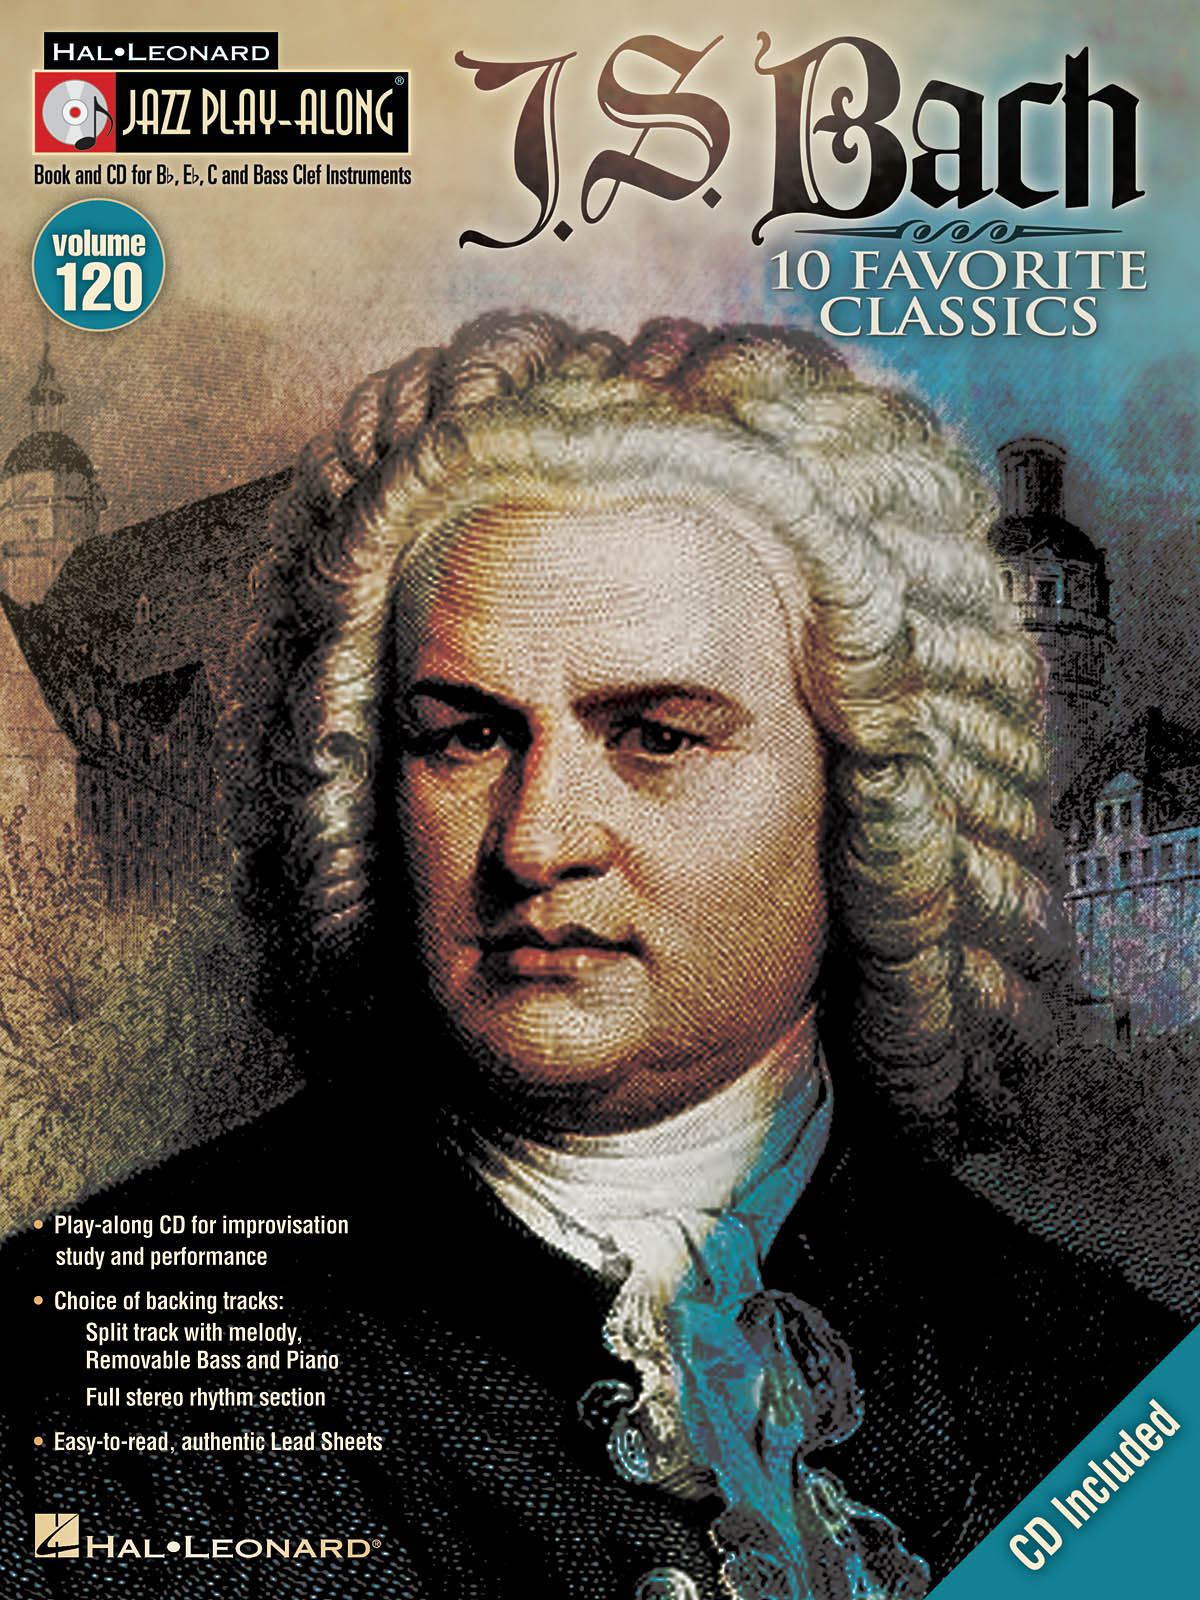 J.S. Bach - Jazz Play-Along Volume 120 - noty pro trubku, housle, flétnu